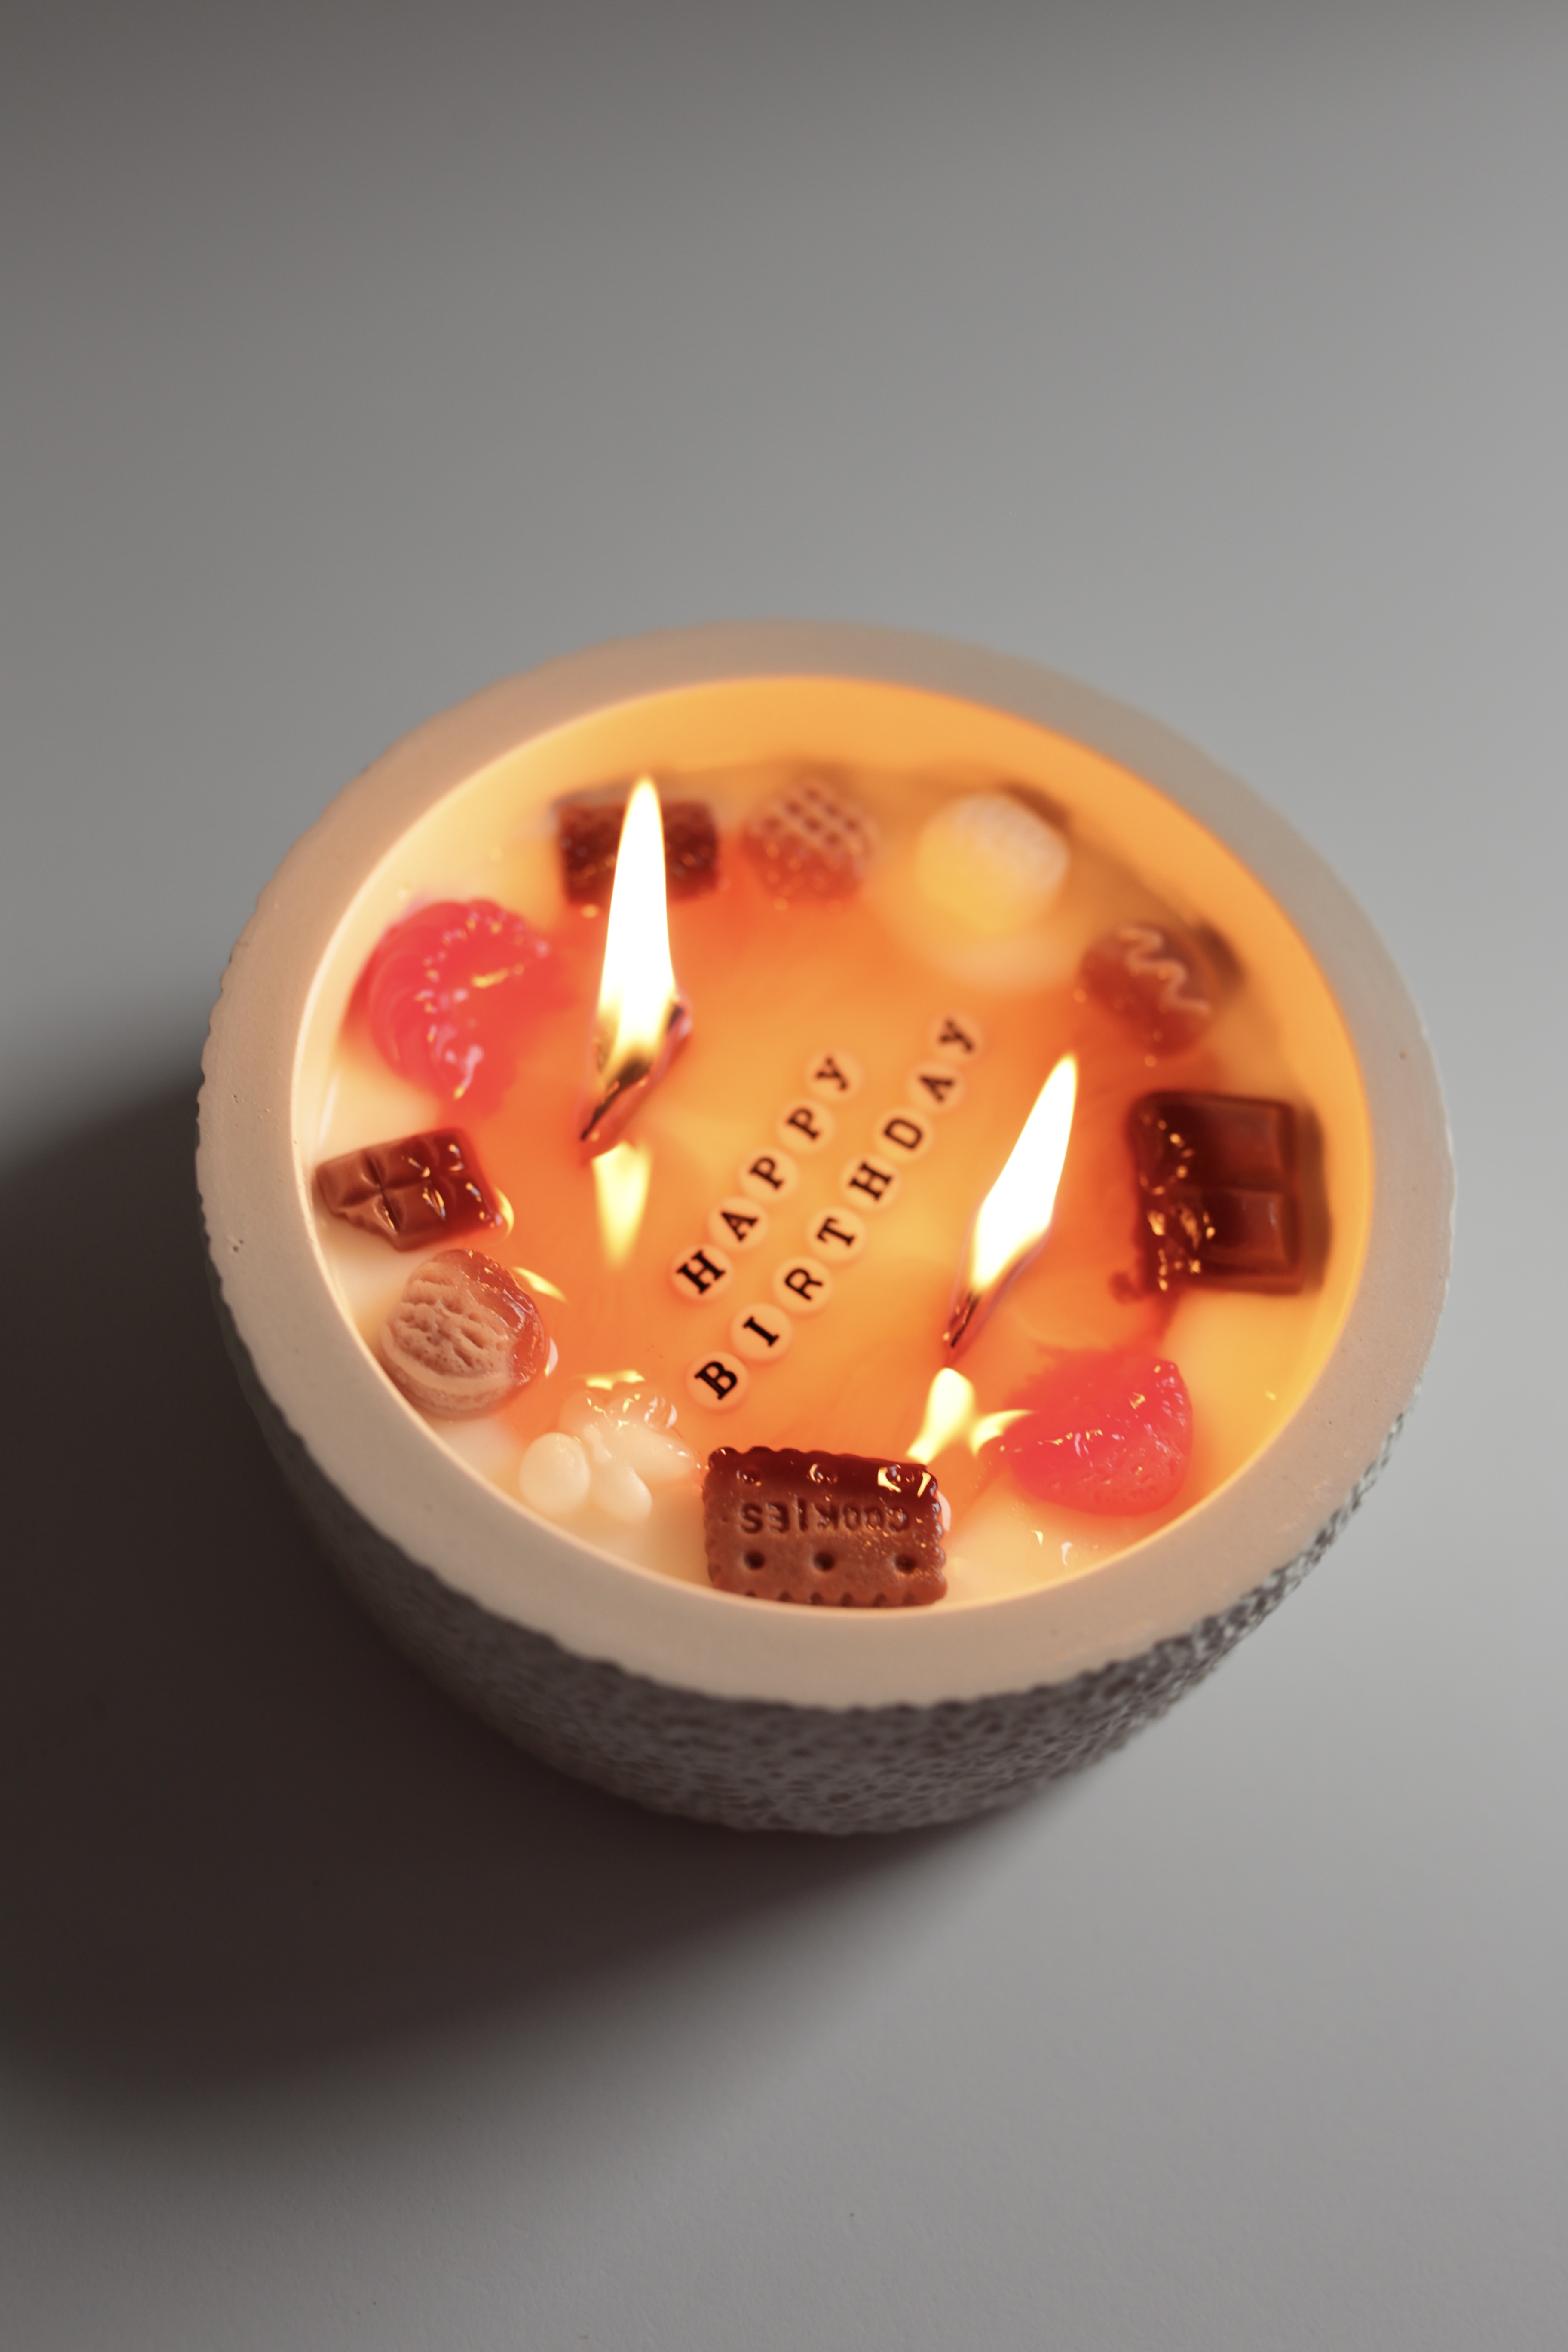 №1 Свічка-тортик "Нappy Birthday" свічка із таємним написом